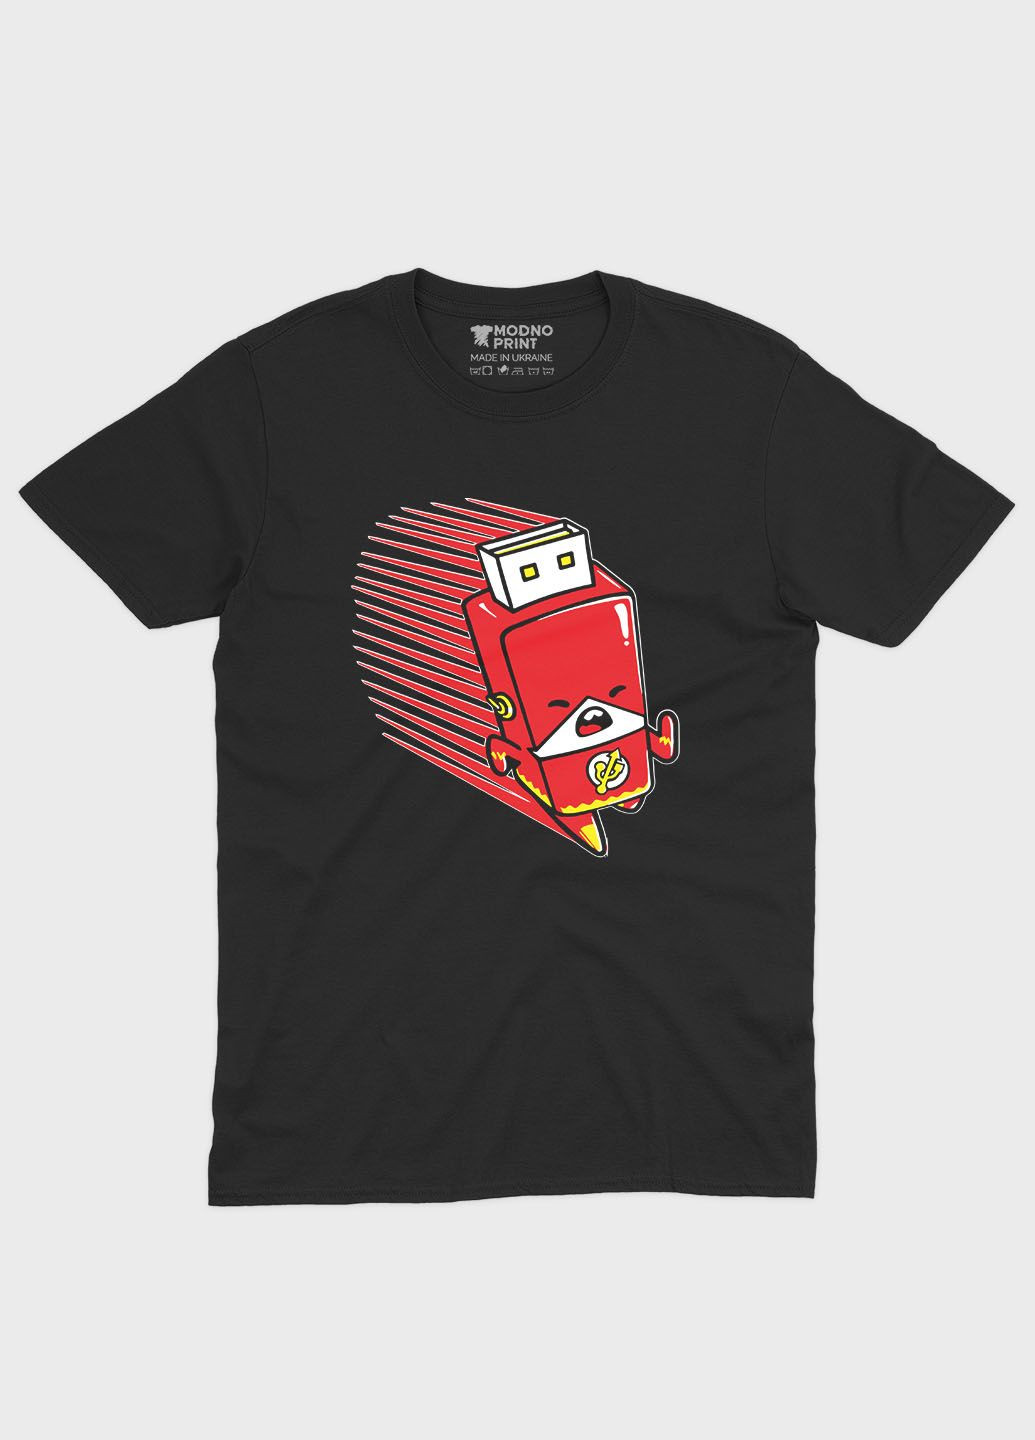 Черная демисезонная футболка для мальчика с принтом супергероя - флэш (ts001-1-bl-006-010-004-b) Modno